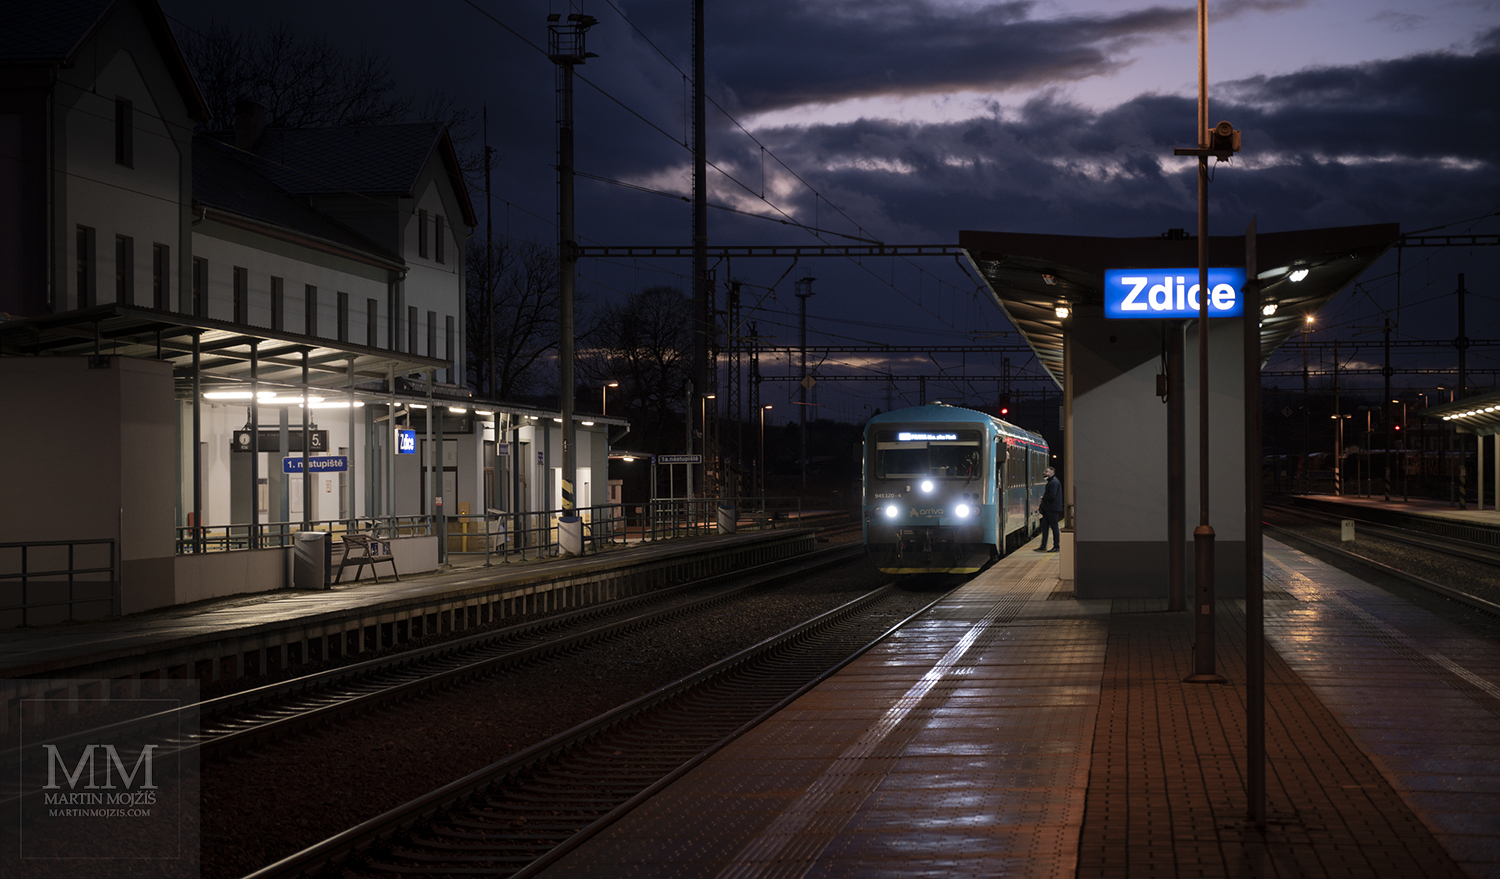 Nádraží Zdice, motorový vlak Arriva připraven k odjezdu směr Beroun.